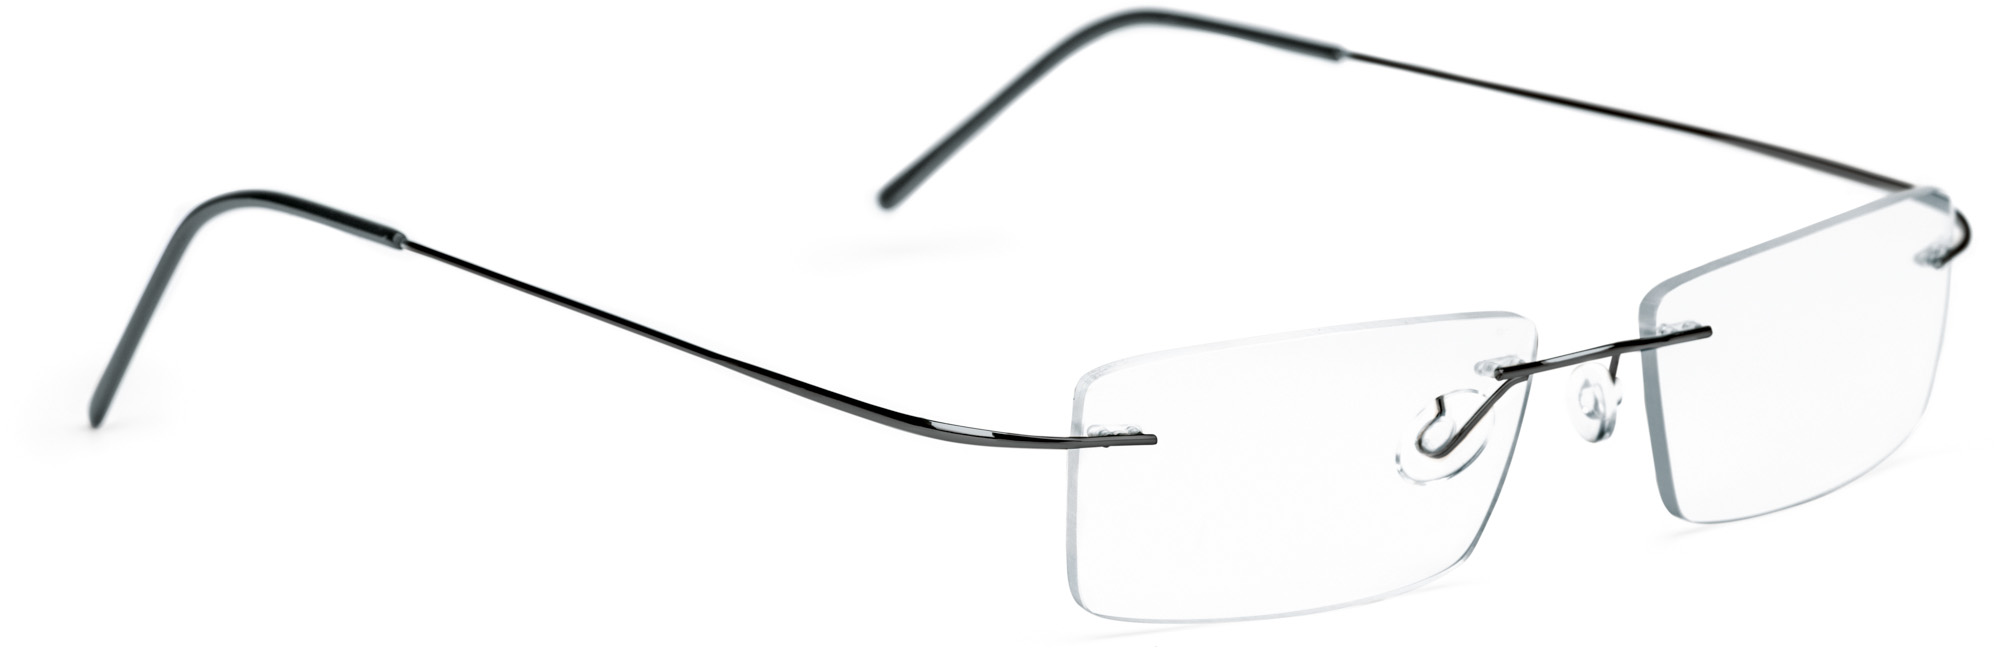 Hülsenbohrbrille Monoblockbügel, Schwarz